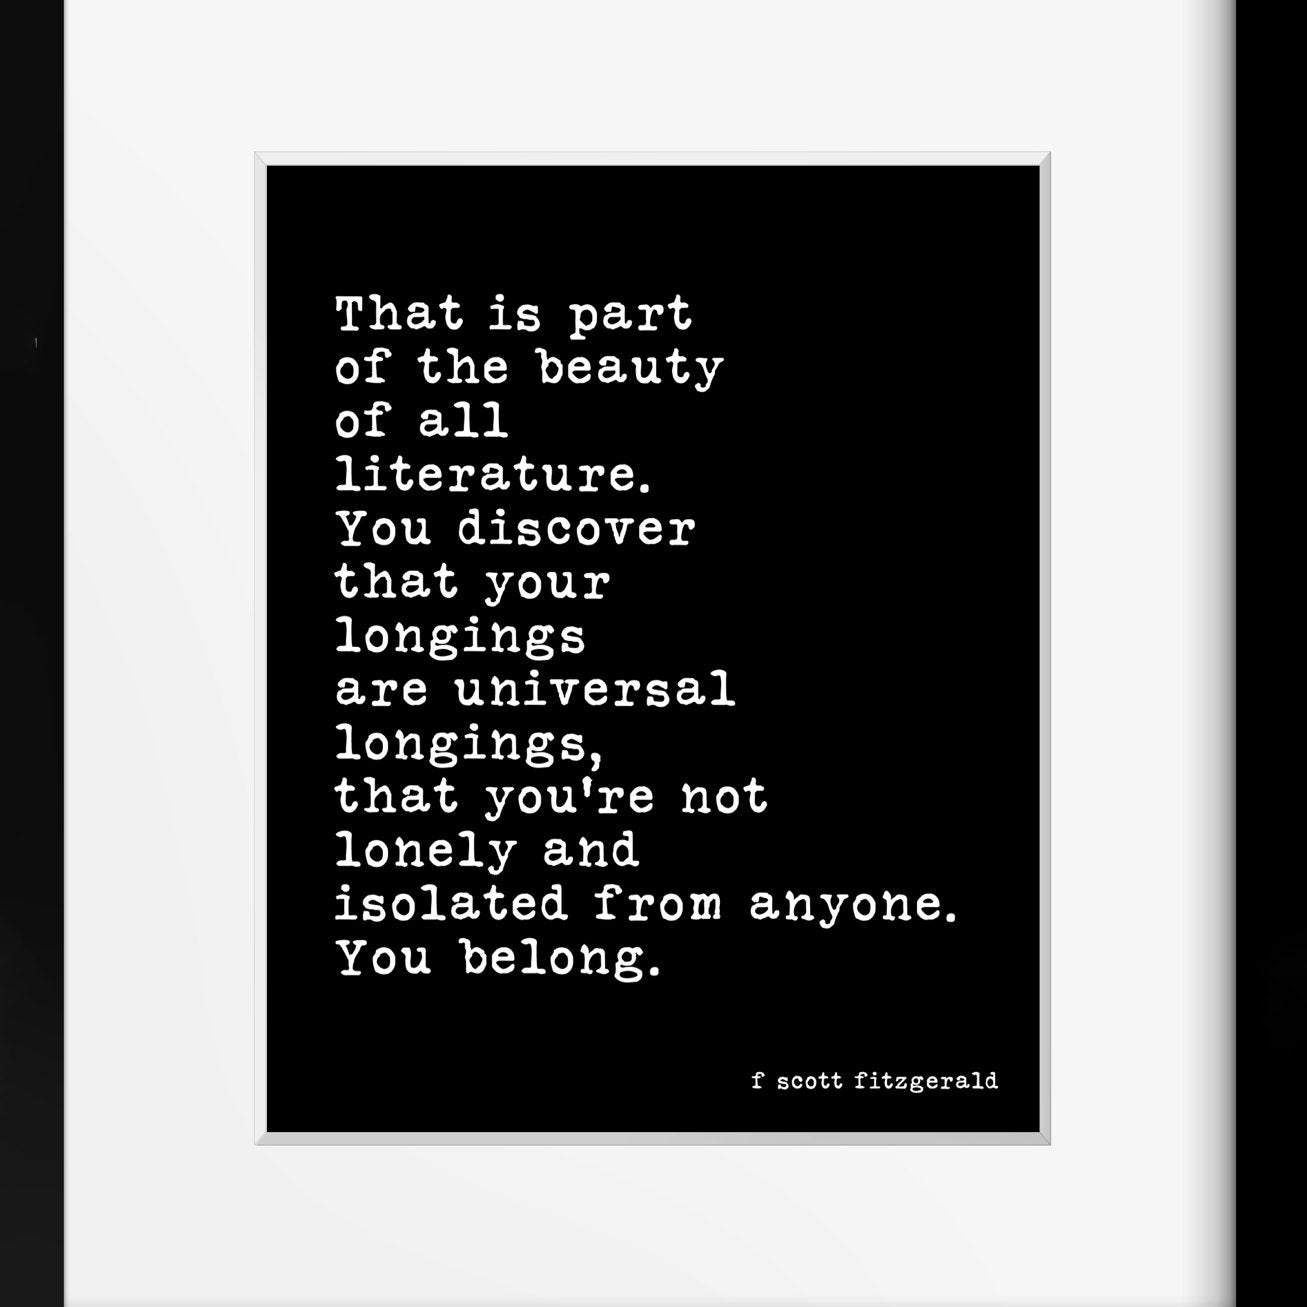 F Scott Fitzgerald Literature Quote Print - BookQuoteDecor